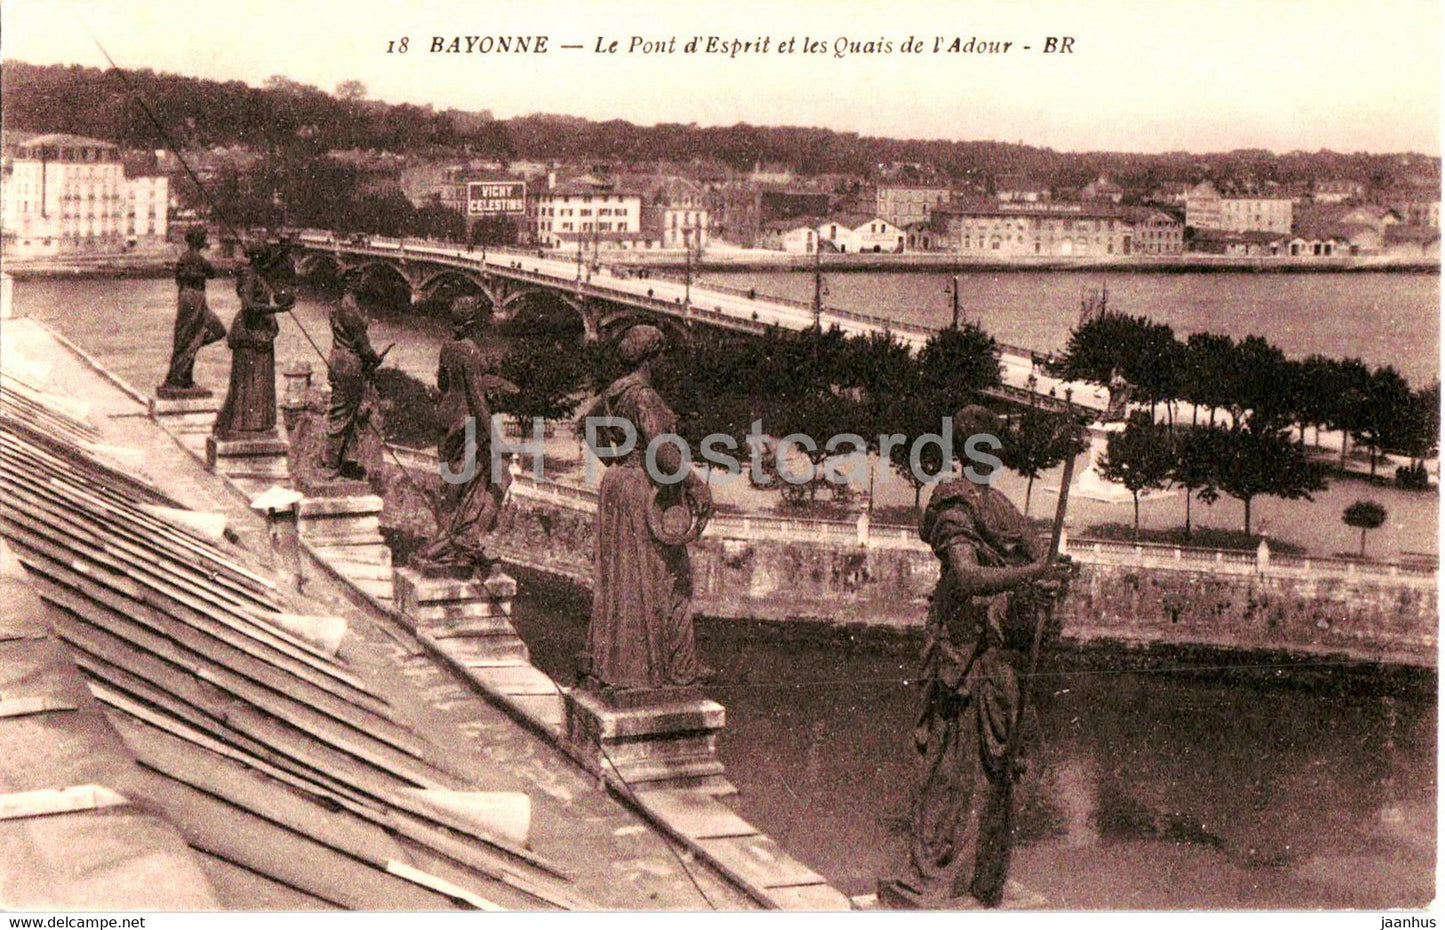 Bayonne - Le Pont d'Esprit et les Quais de l'Adour - bridge - 18 - old postcard - France - unused - JH Postcards